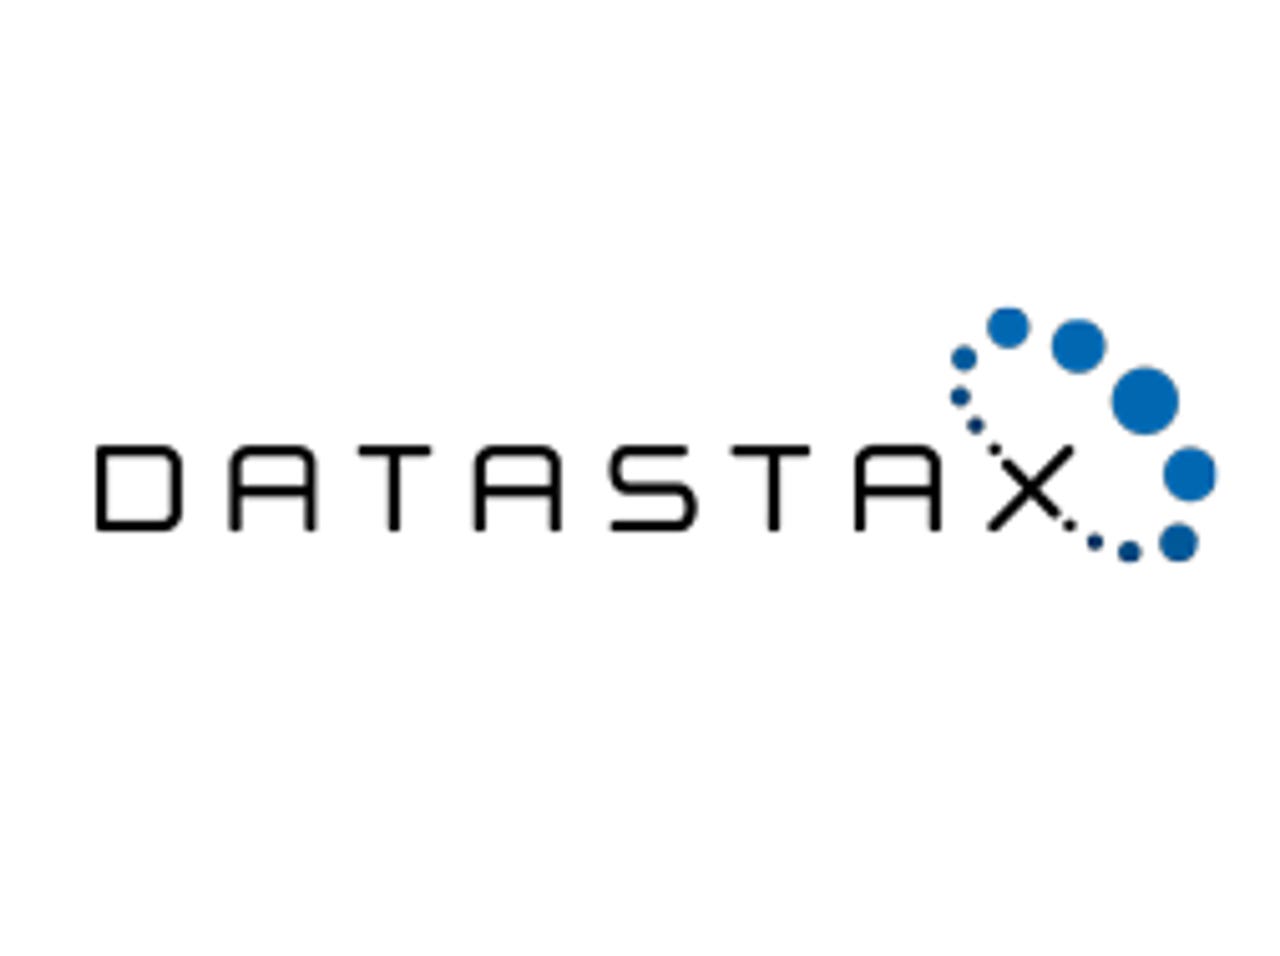 datastax-thumb-v2.png